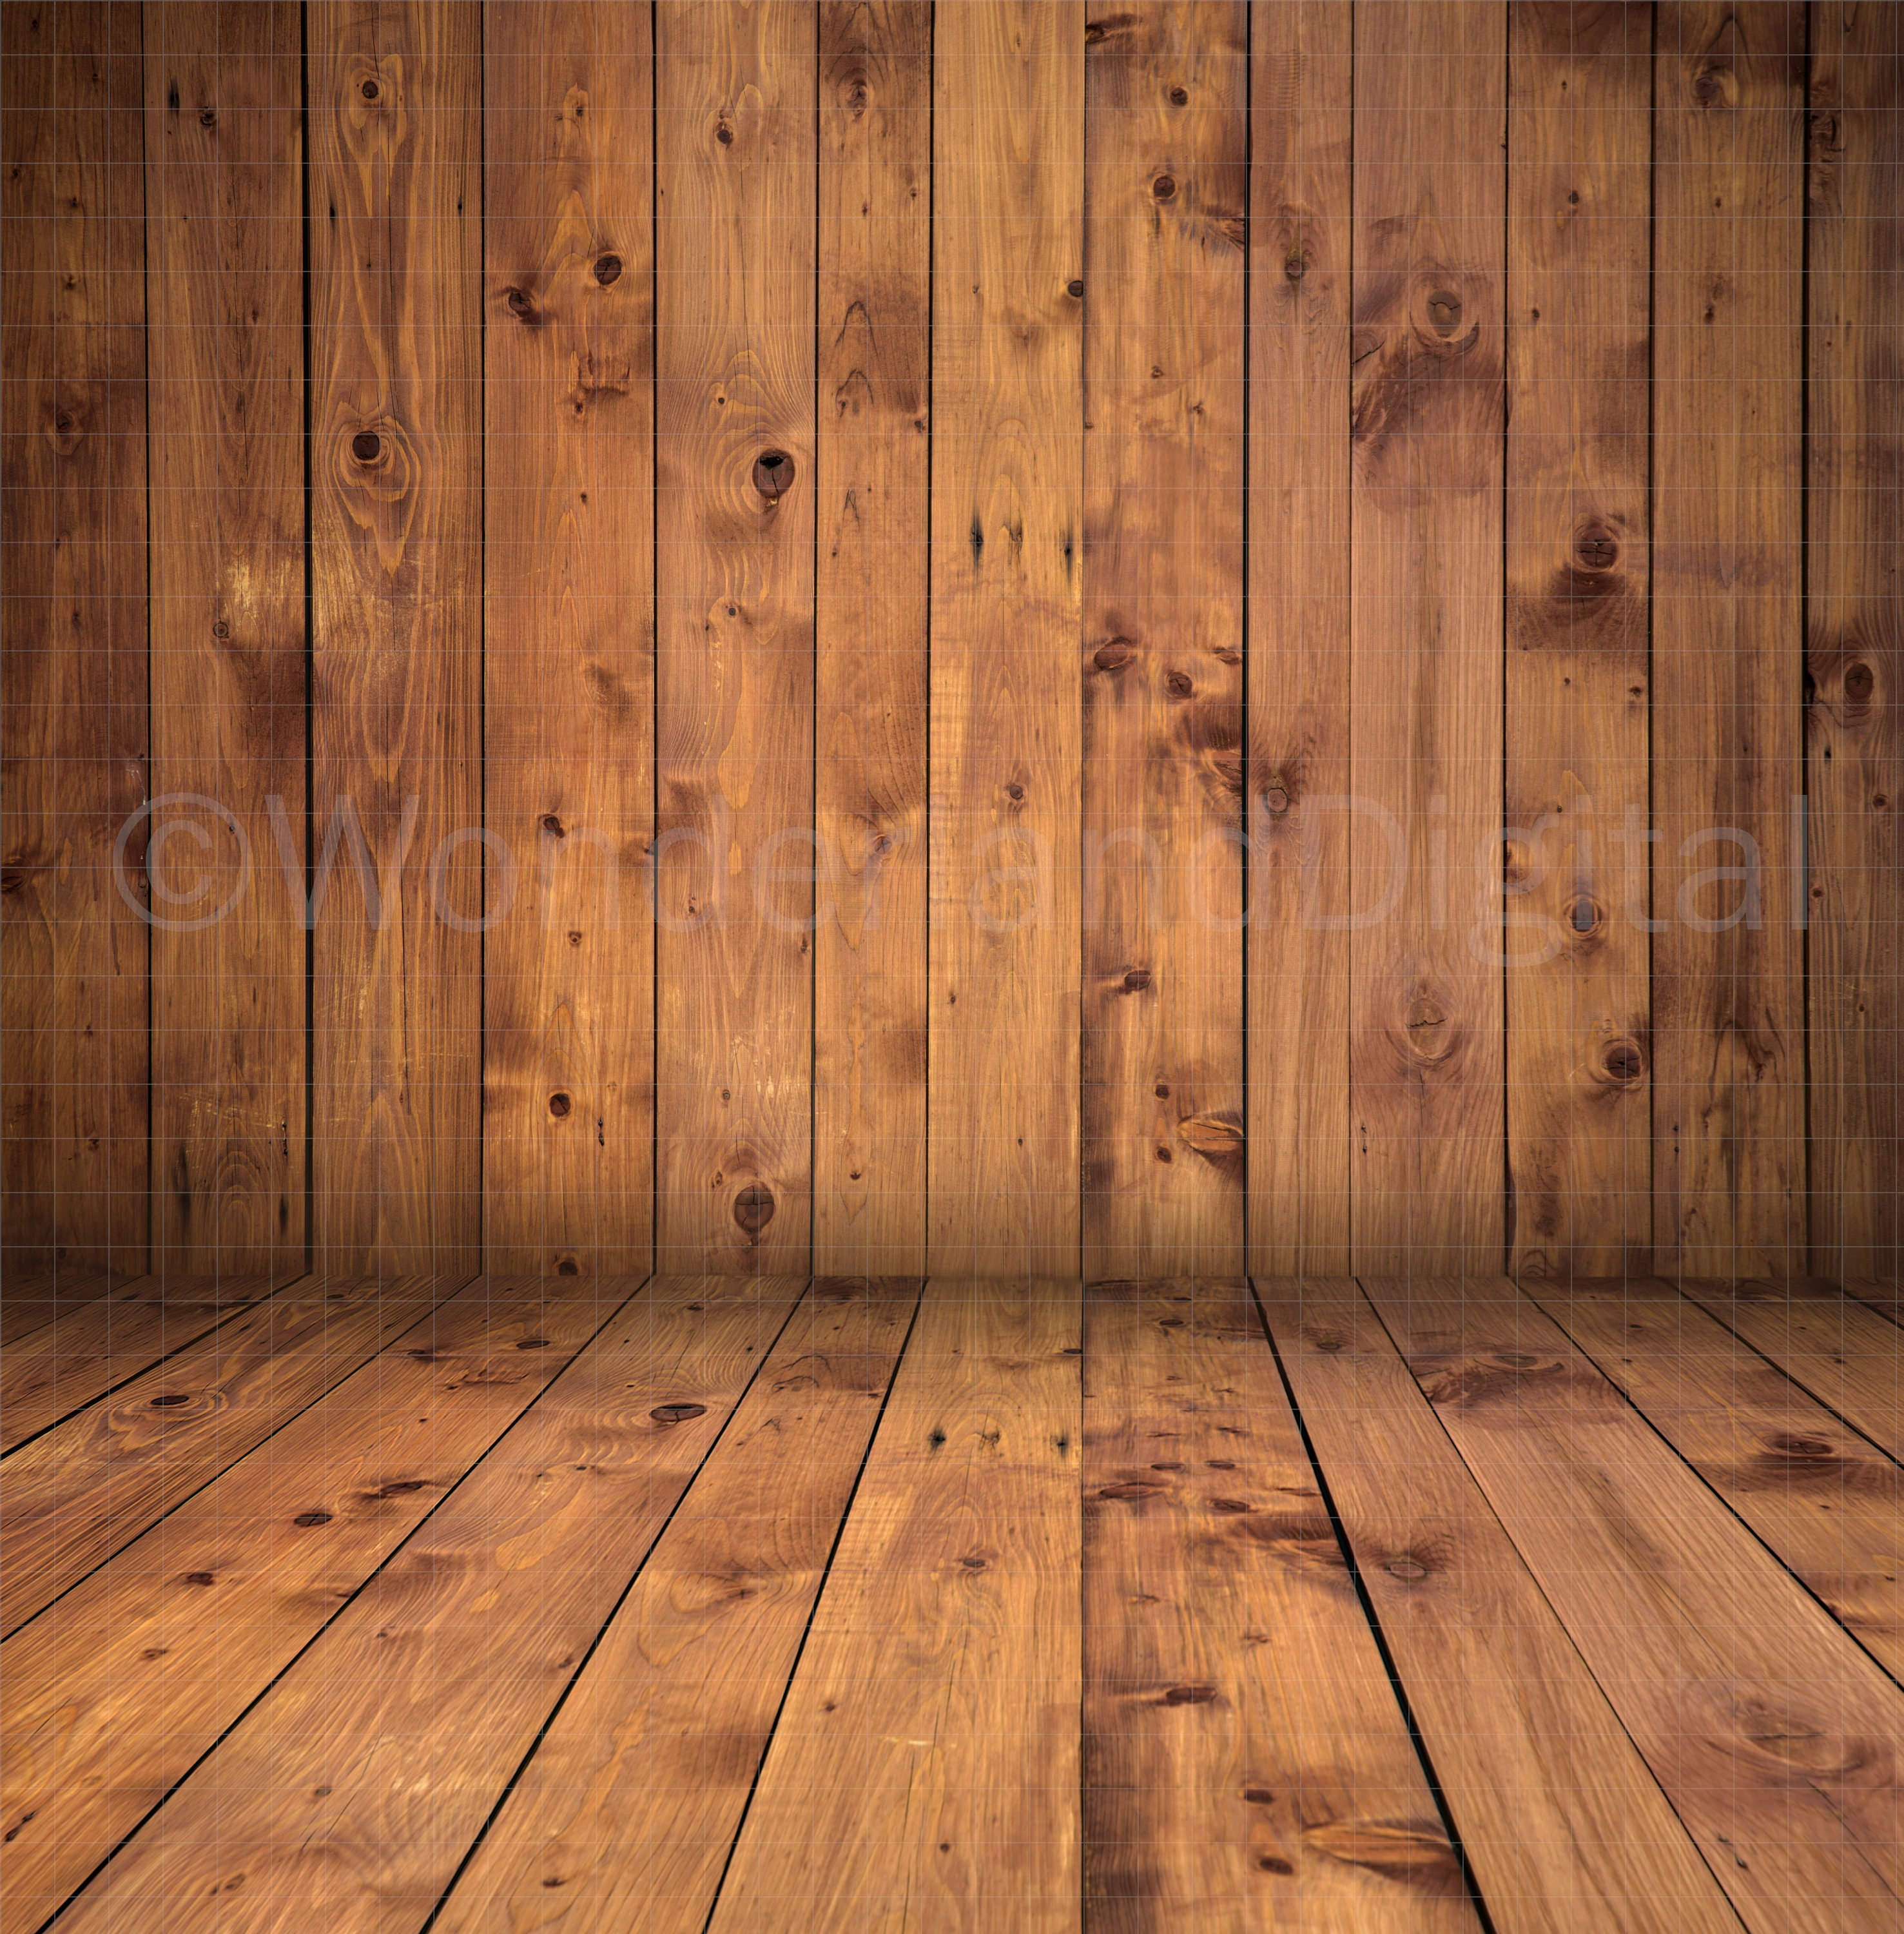 Hãy thưởng thức ảnh nền gỗ cổ điển, một sự kết hợp hoàn hảo giữa vẻ đẹp cổ điển và chất liệu gỗ đẹp mắt. Chọn ảnh này để tạo nên không gian sống cổ điển và sang trọng, đem lại cảm giác ấm cúng cho ngôi nhà của bạn.